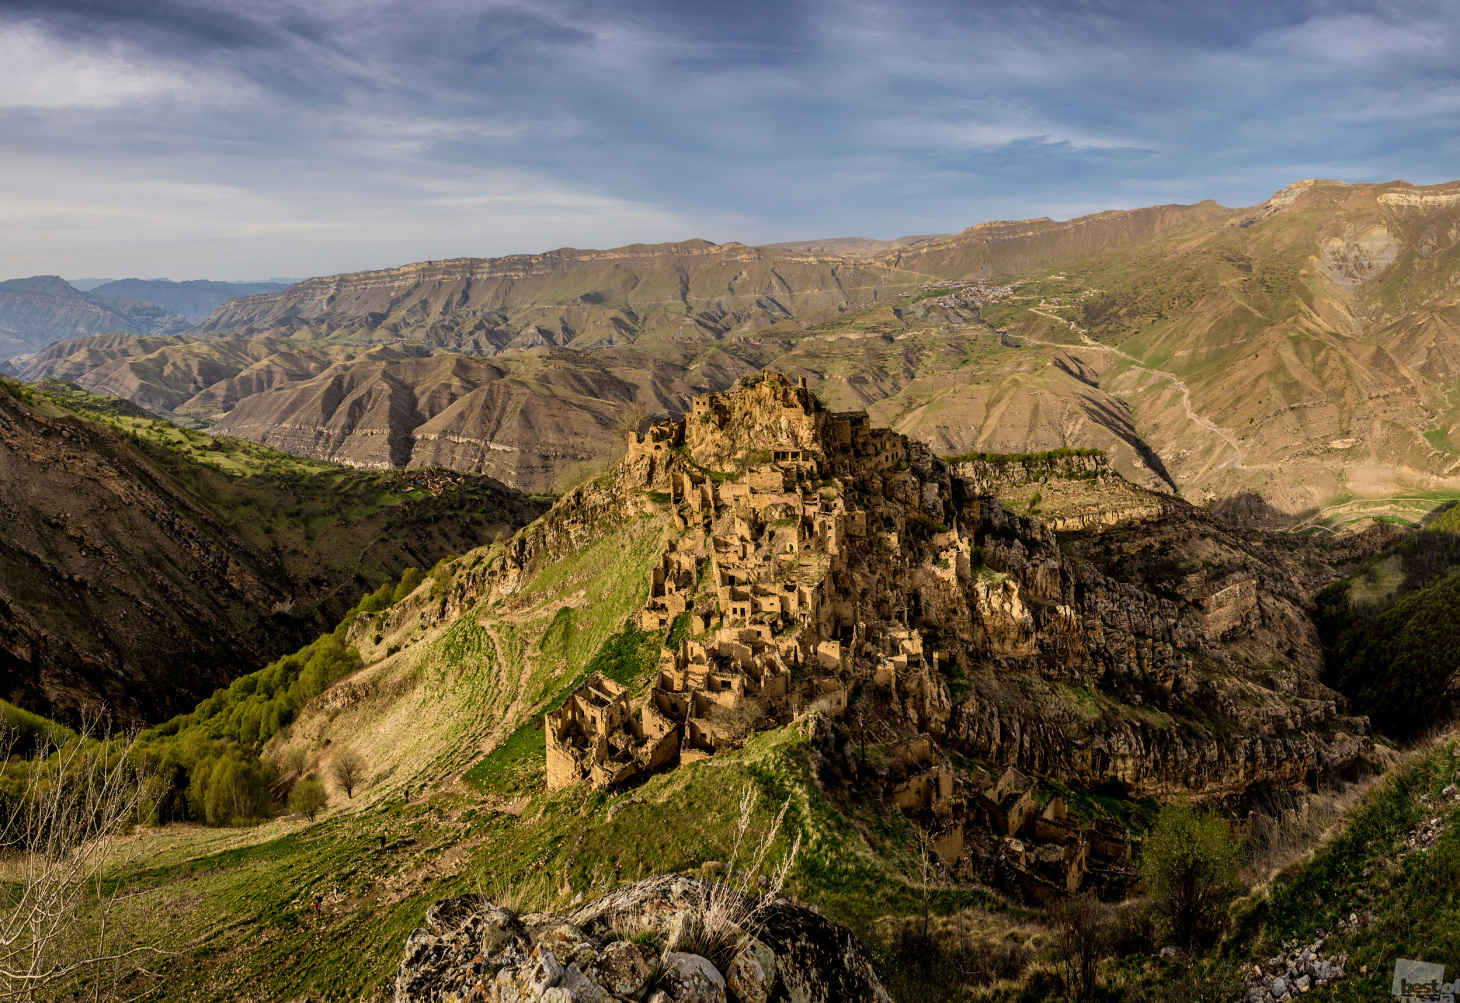 6/15. Napušteno selo Gamsutlj, nekadašnje avarsko naselje u Dagestanu (Sjeverni Kavkaz). Selo je urezano u stijenu na oko 1 400 m nadmorske visine.